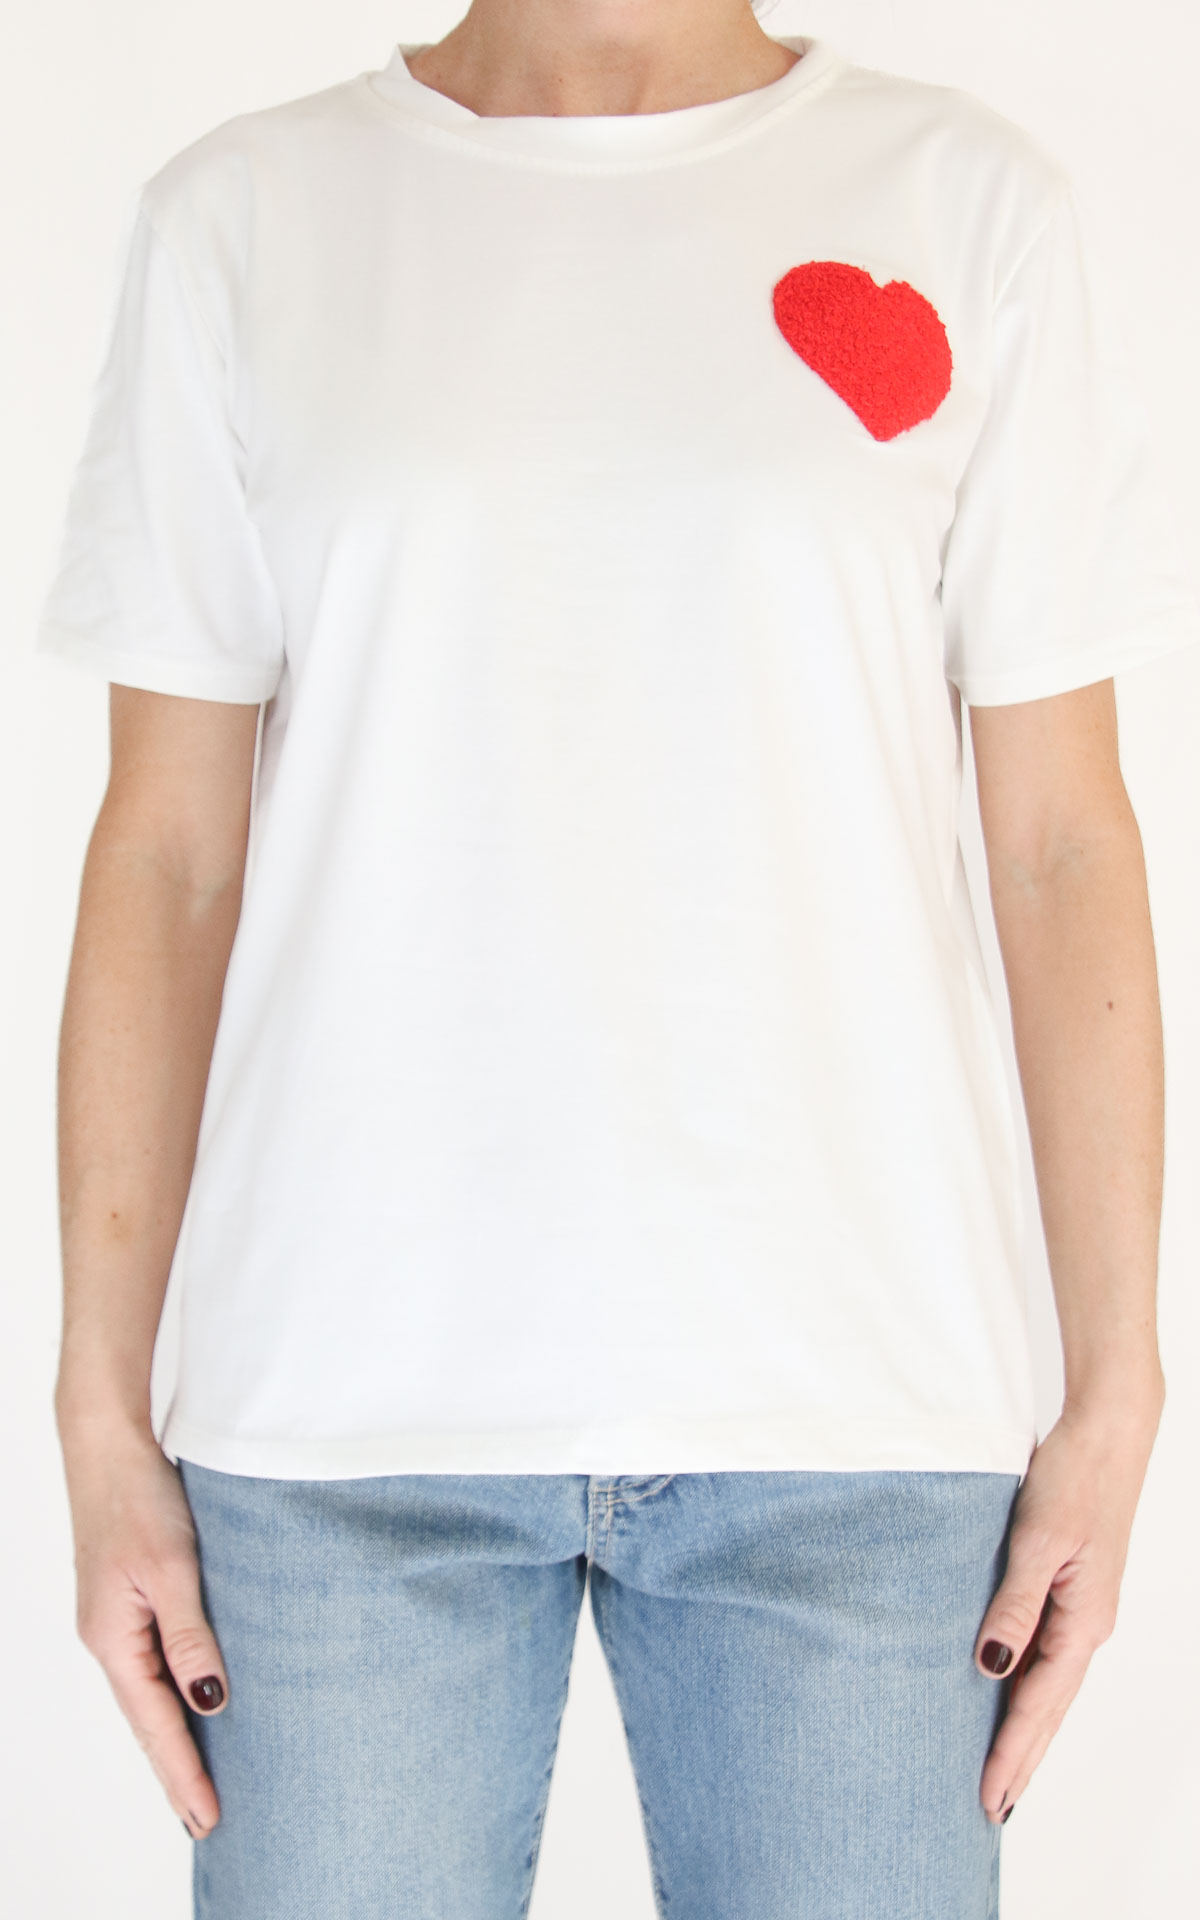 Civico 1 - T-shirt decoro - Cuore rosso